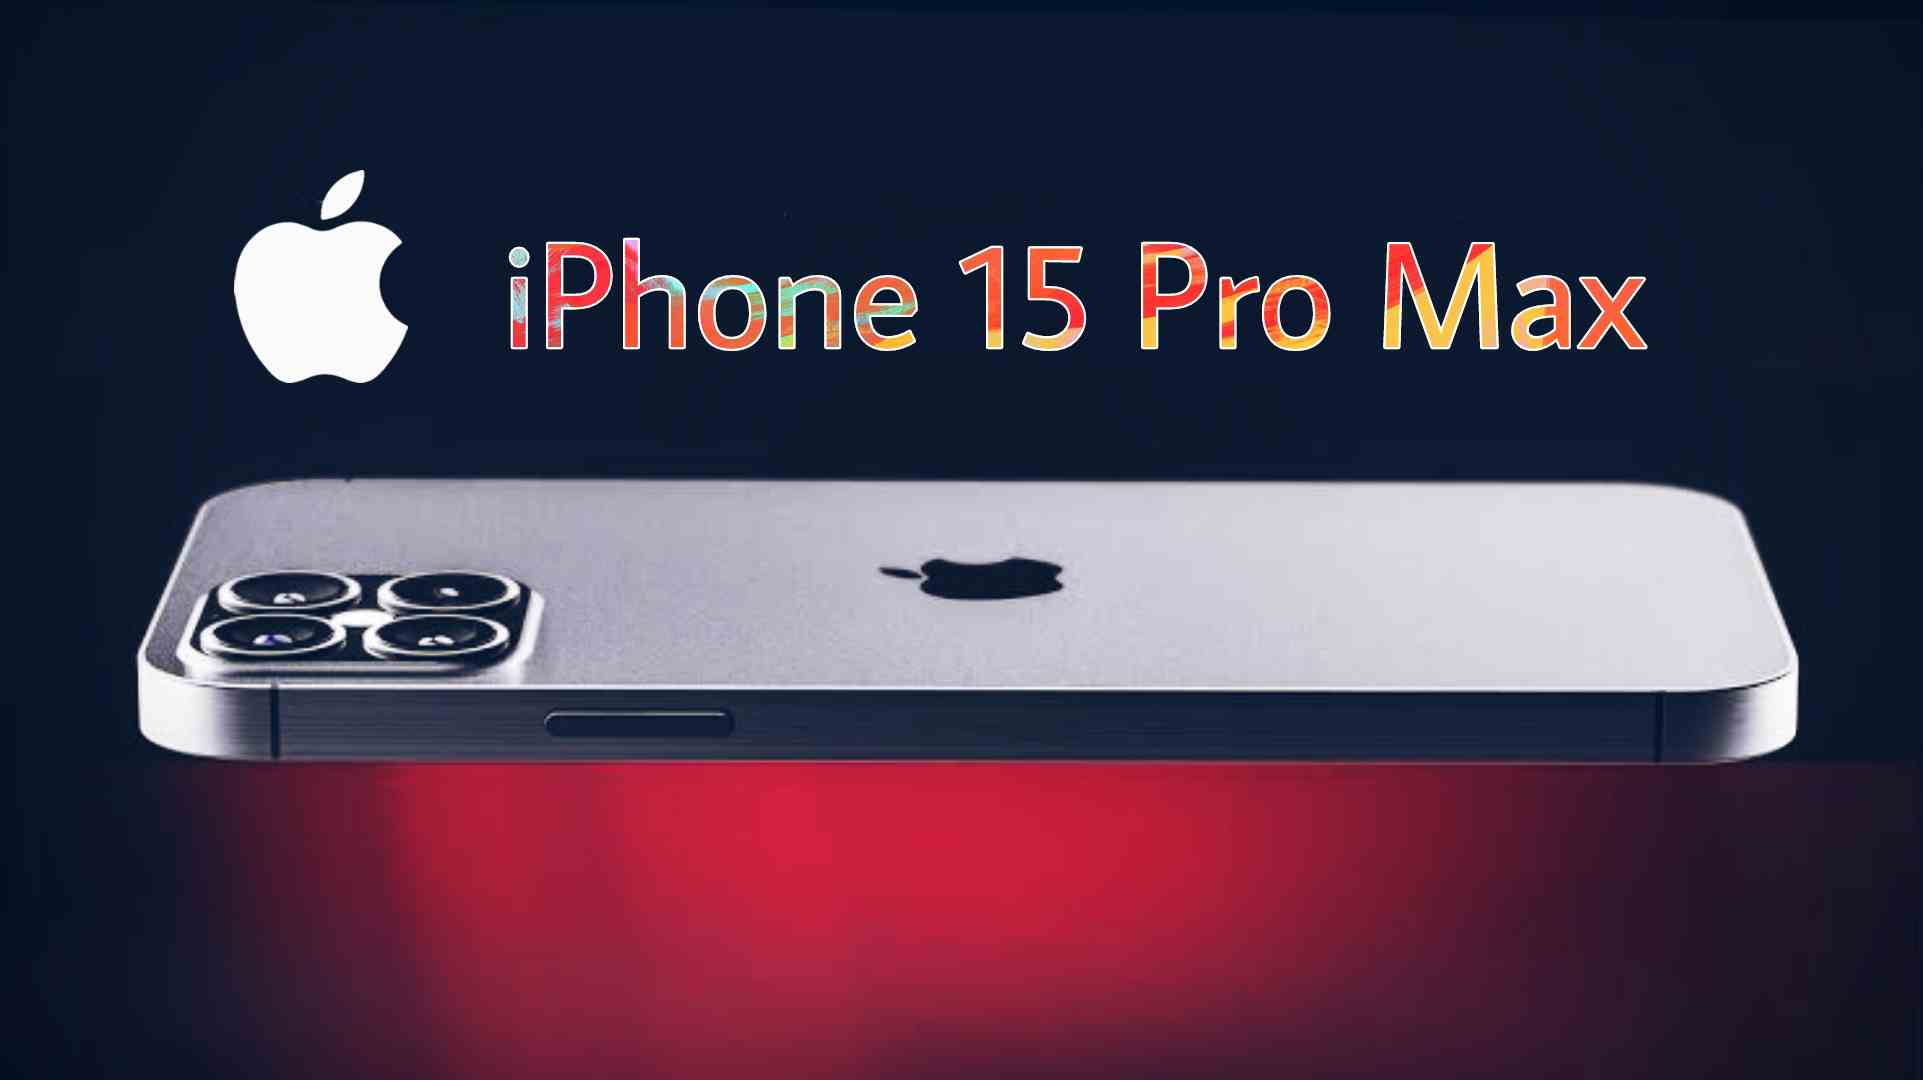 iPhone 15 Pro Max Price In UK